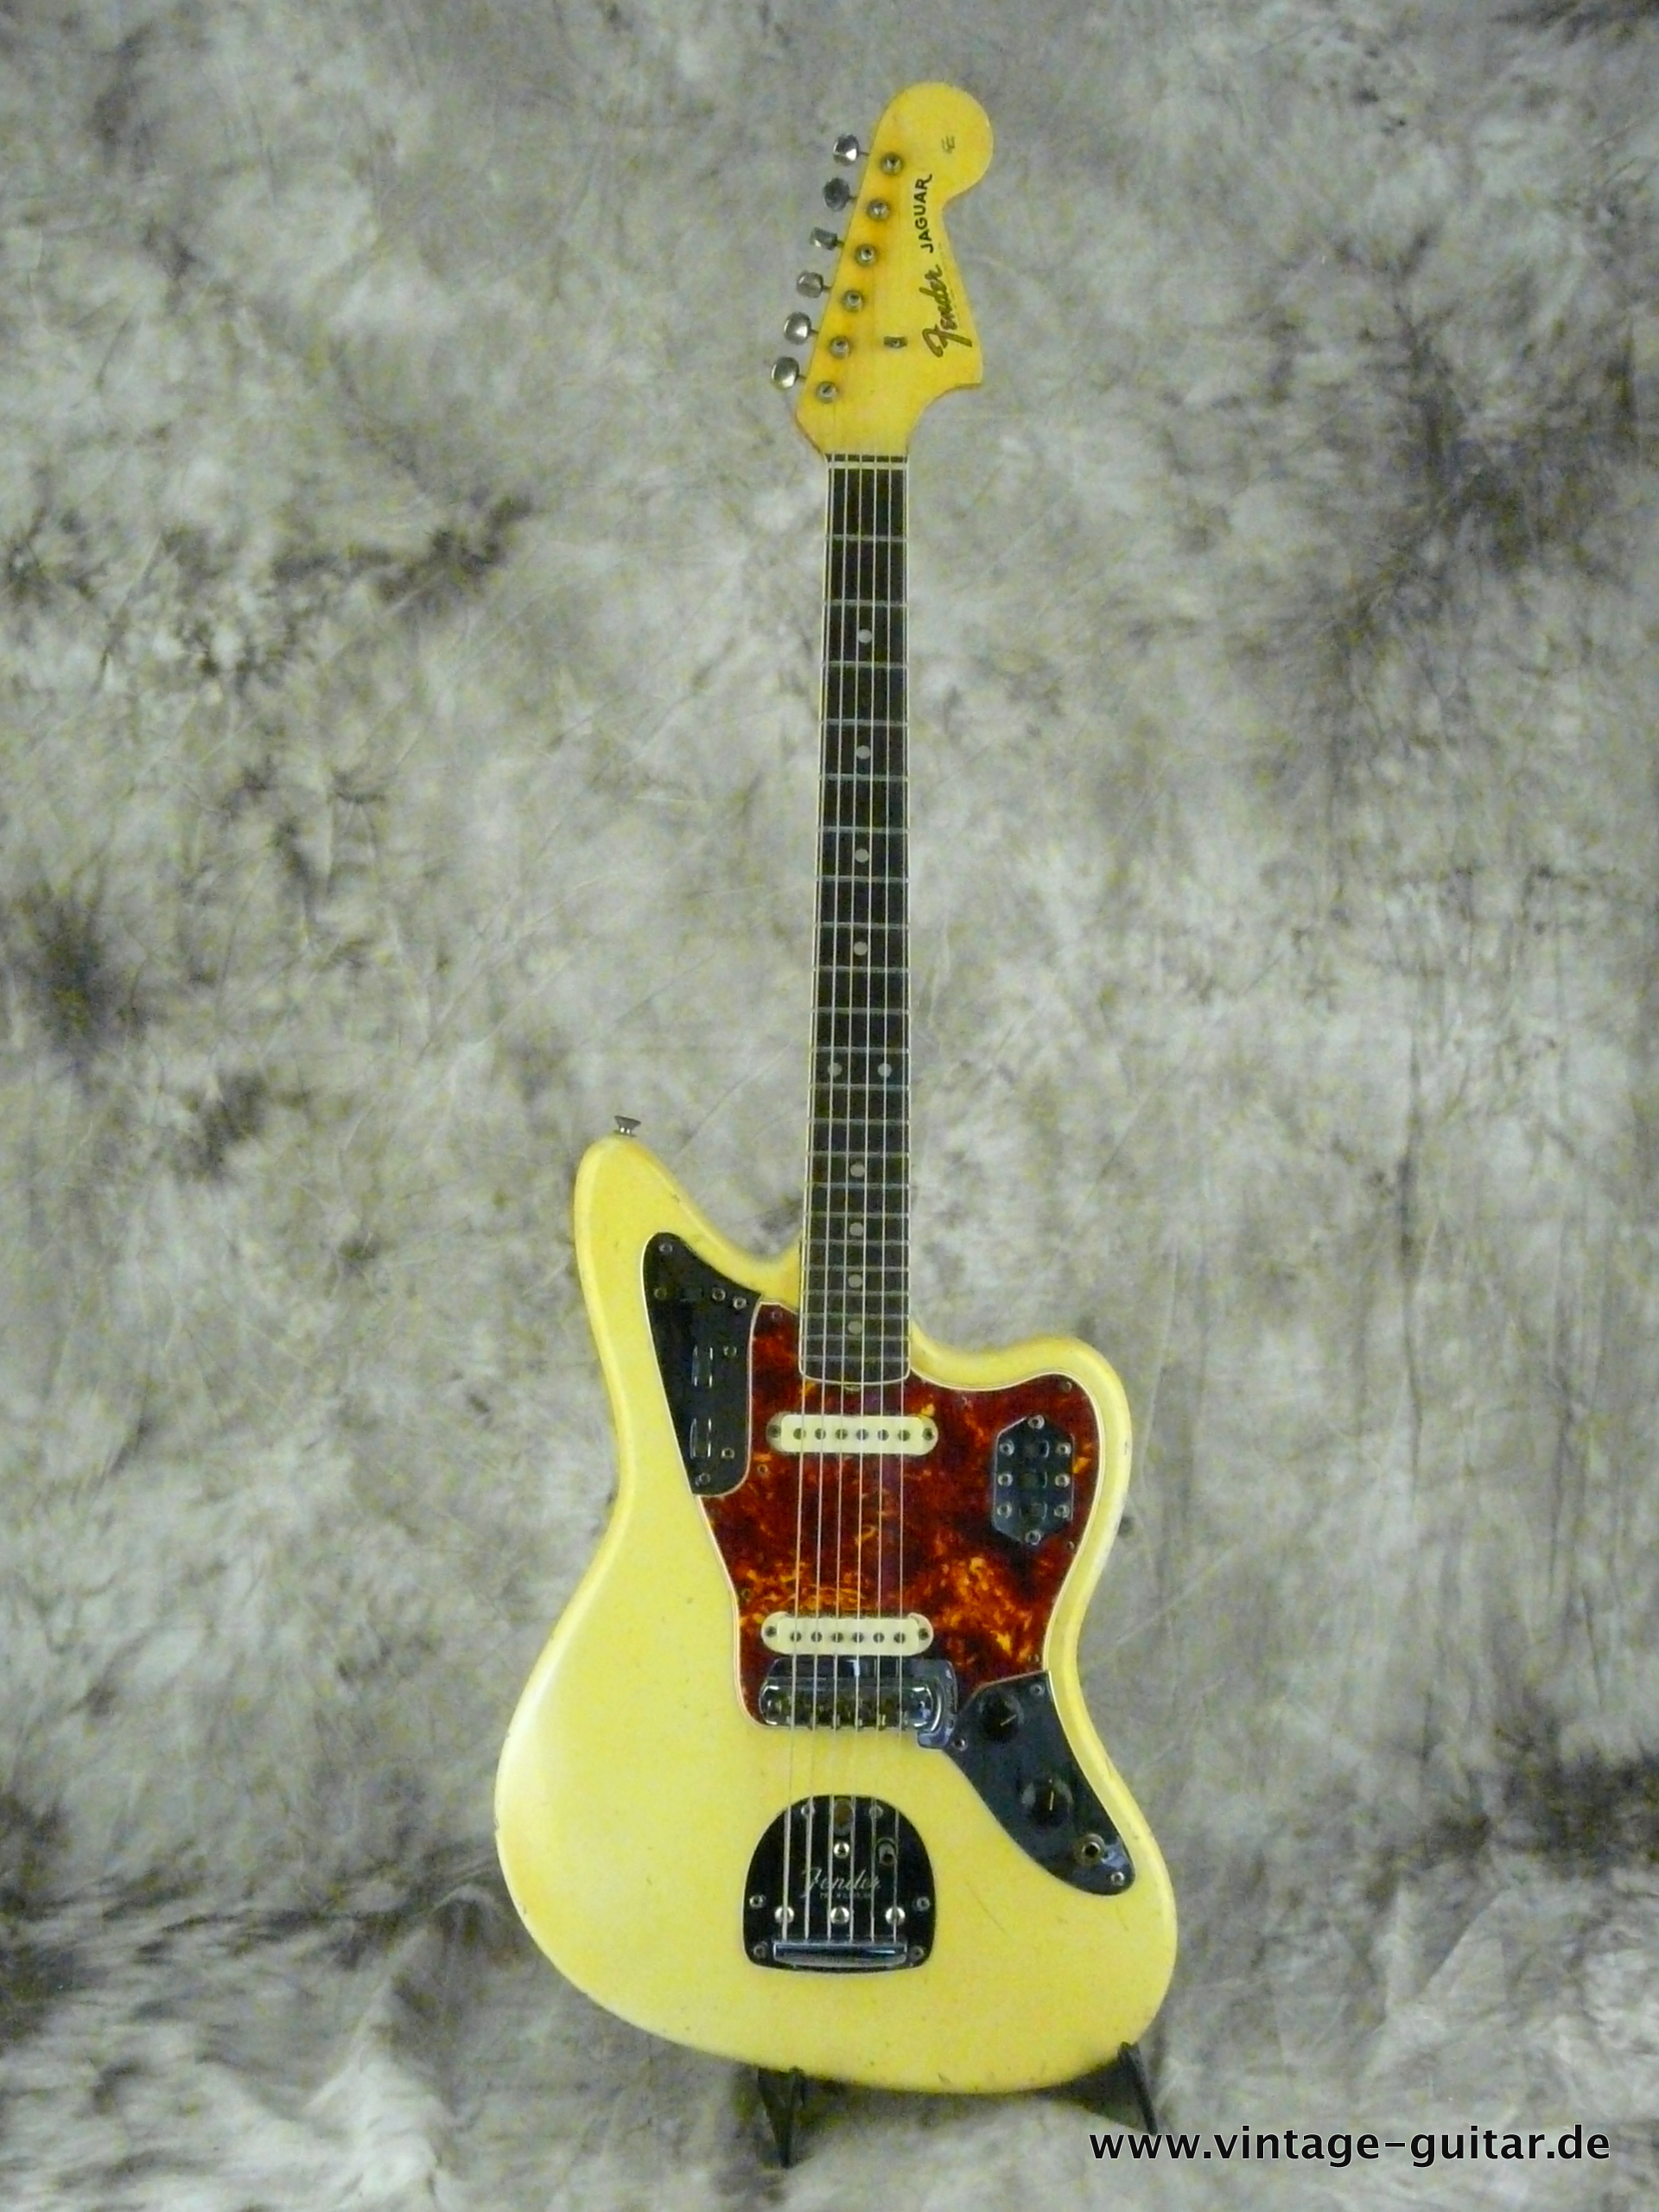 Fender Jaguar 1965 Olympic White Guitar For Sale Vintage Guitar 